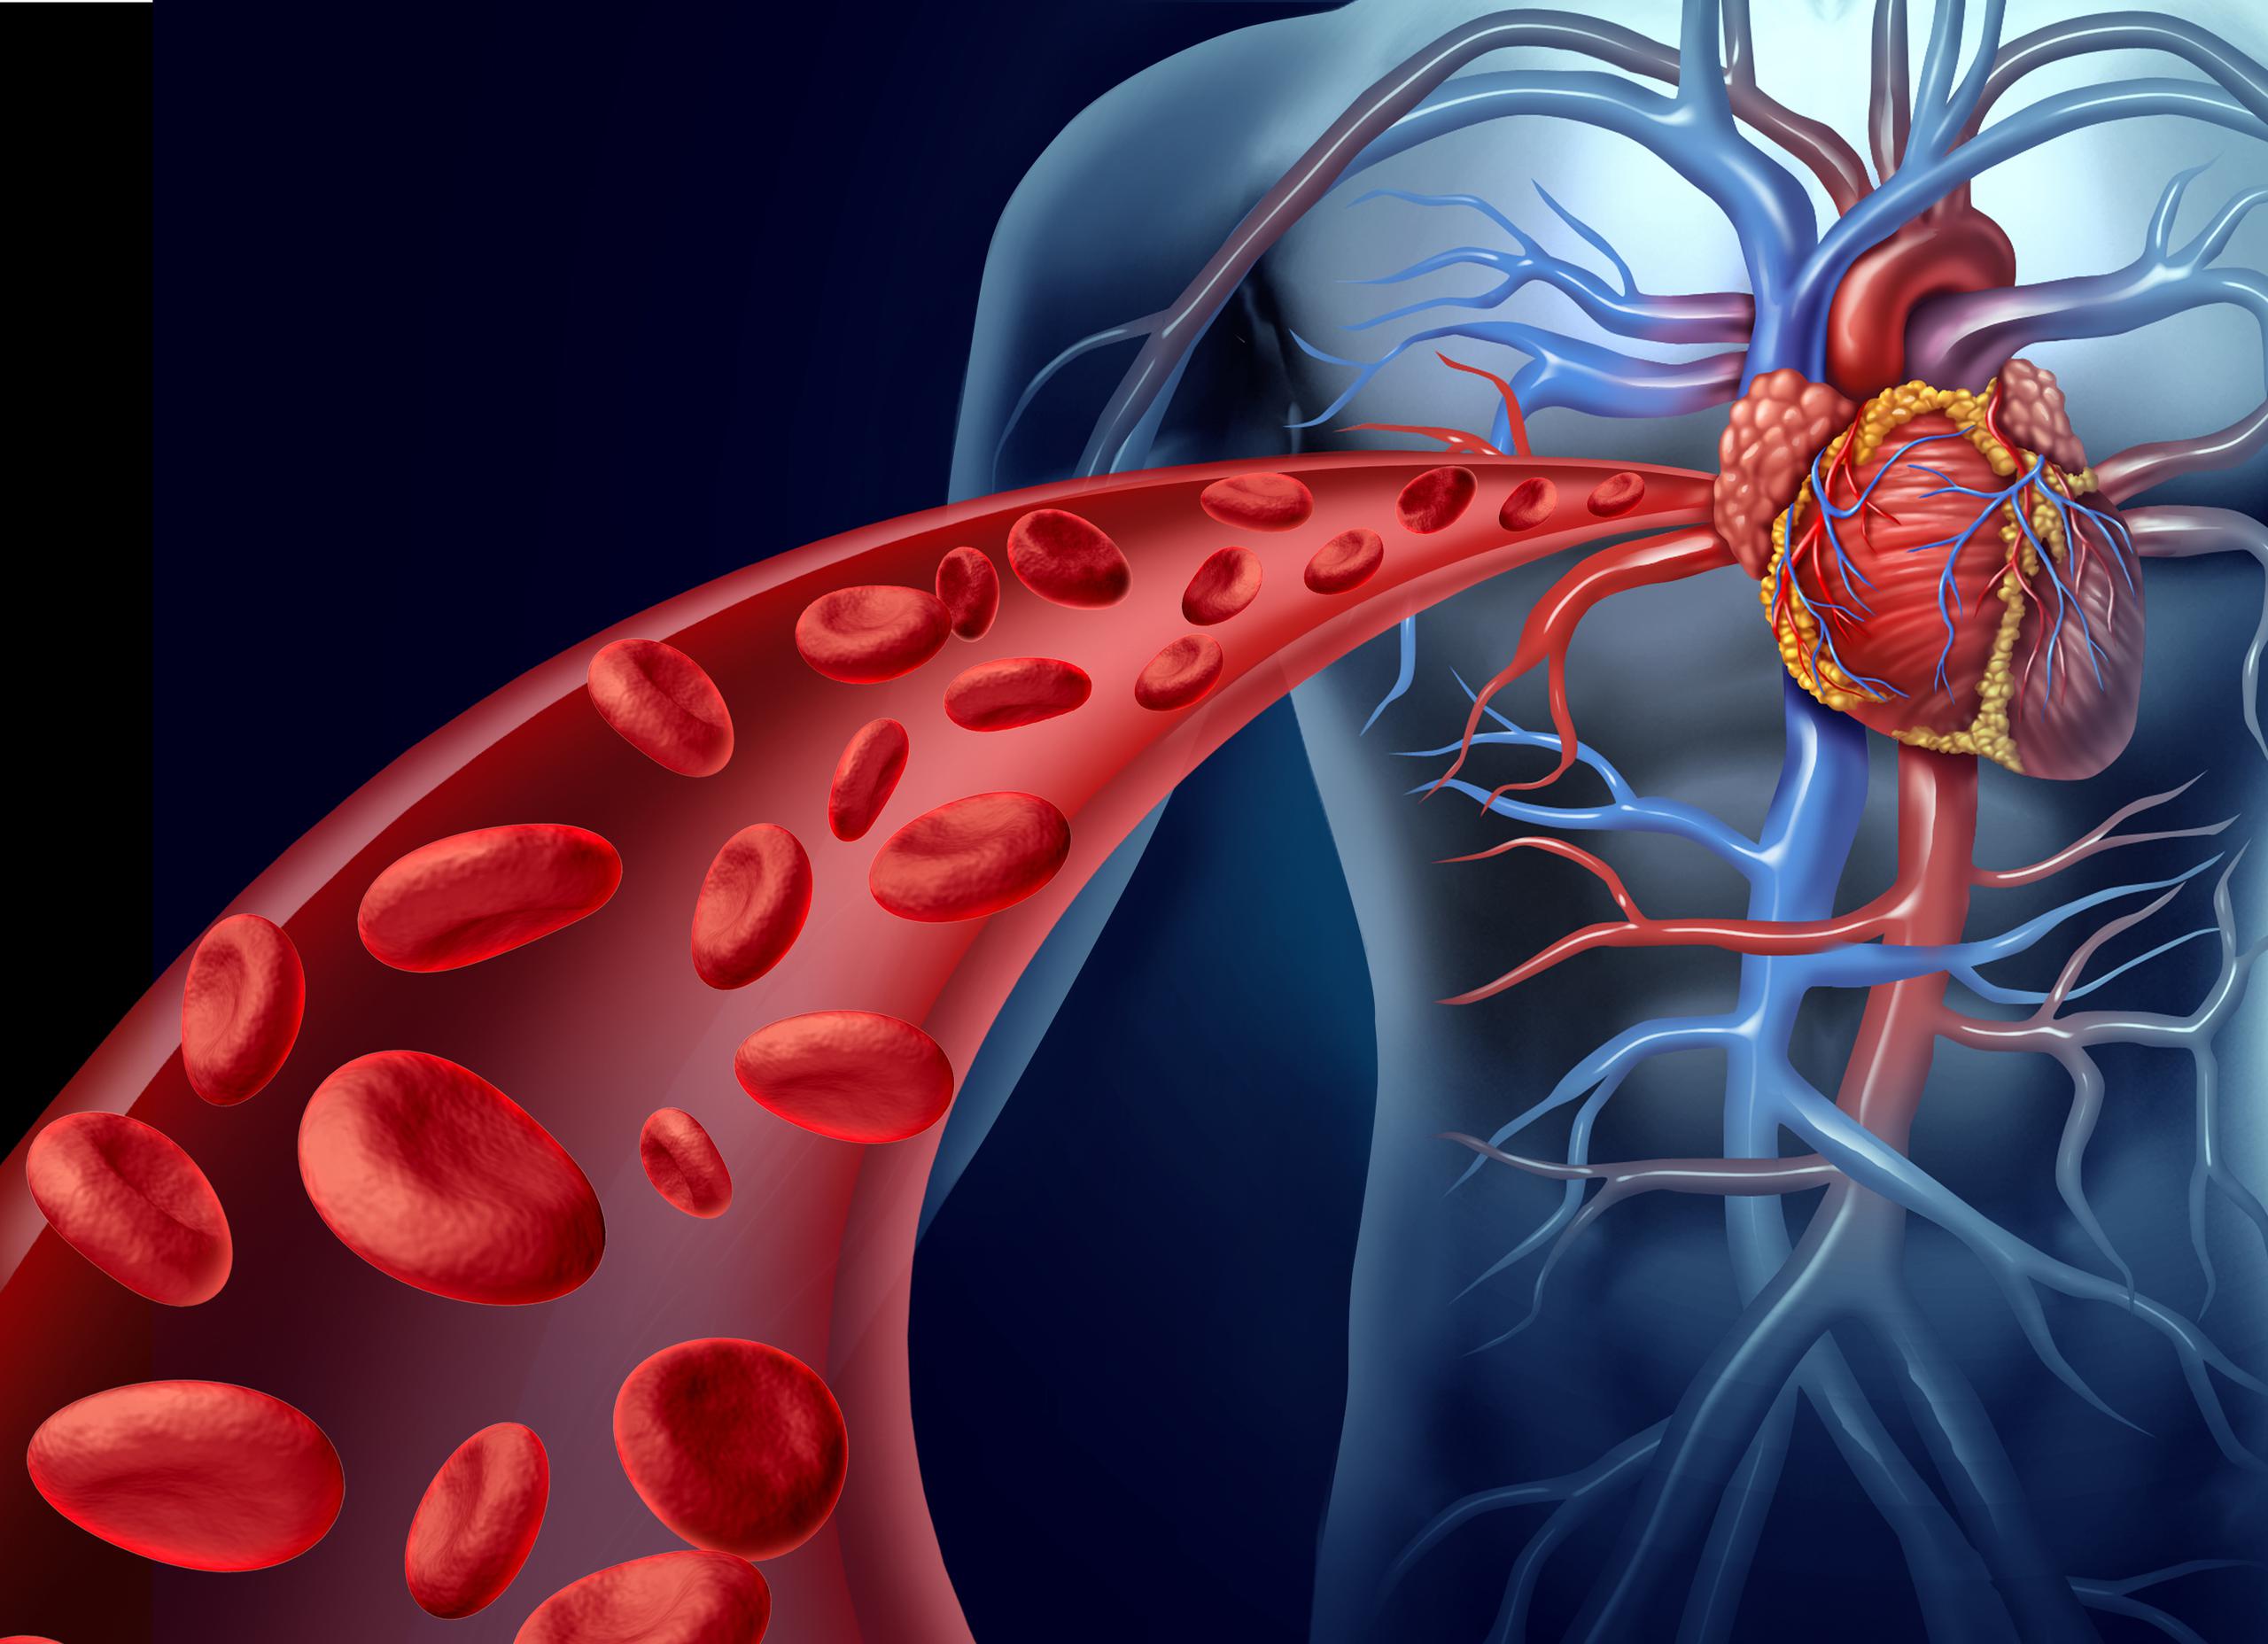 Existe una asociación entre el aumento de grasa epicárdica y el desarrollo de enfermedad coronaria.